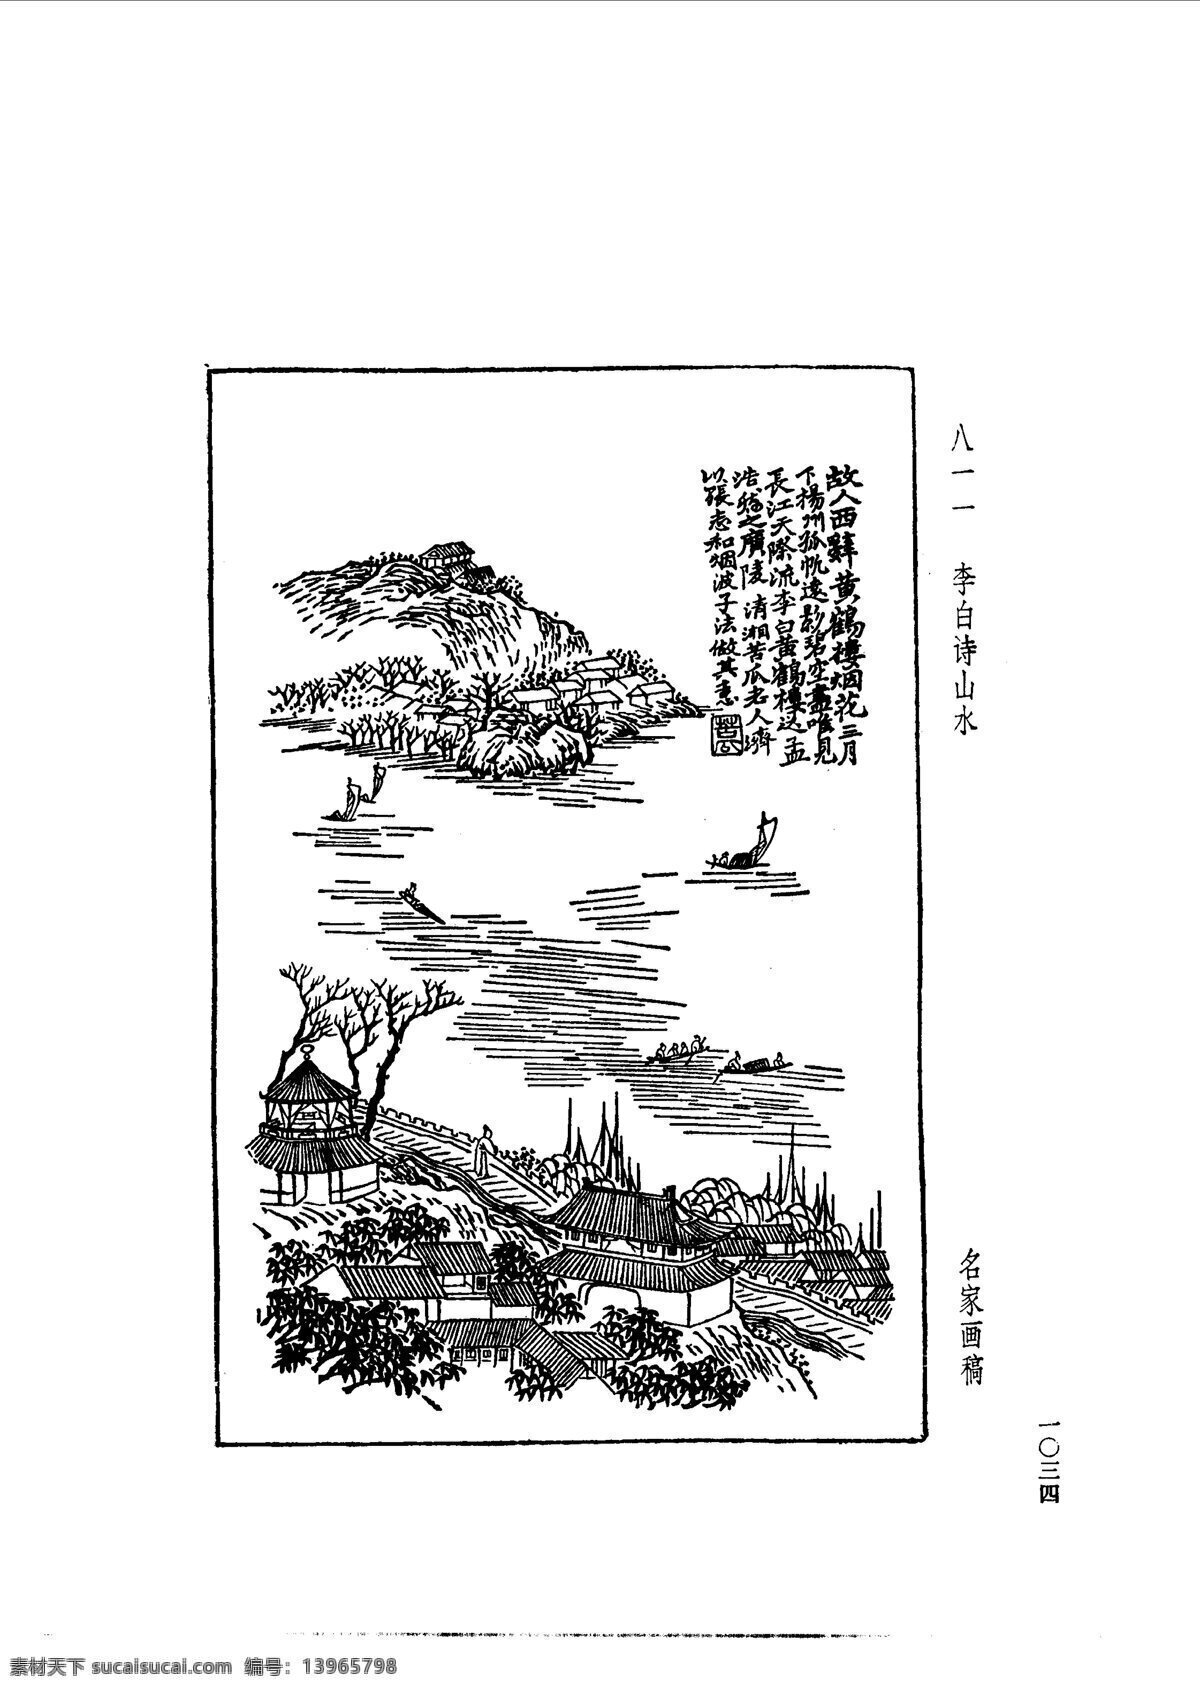 中国 古典文学 版画 选集 上 下册1062 设计素材 版画世界 书画美术 白色